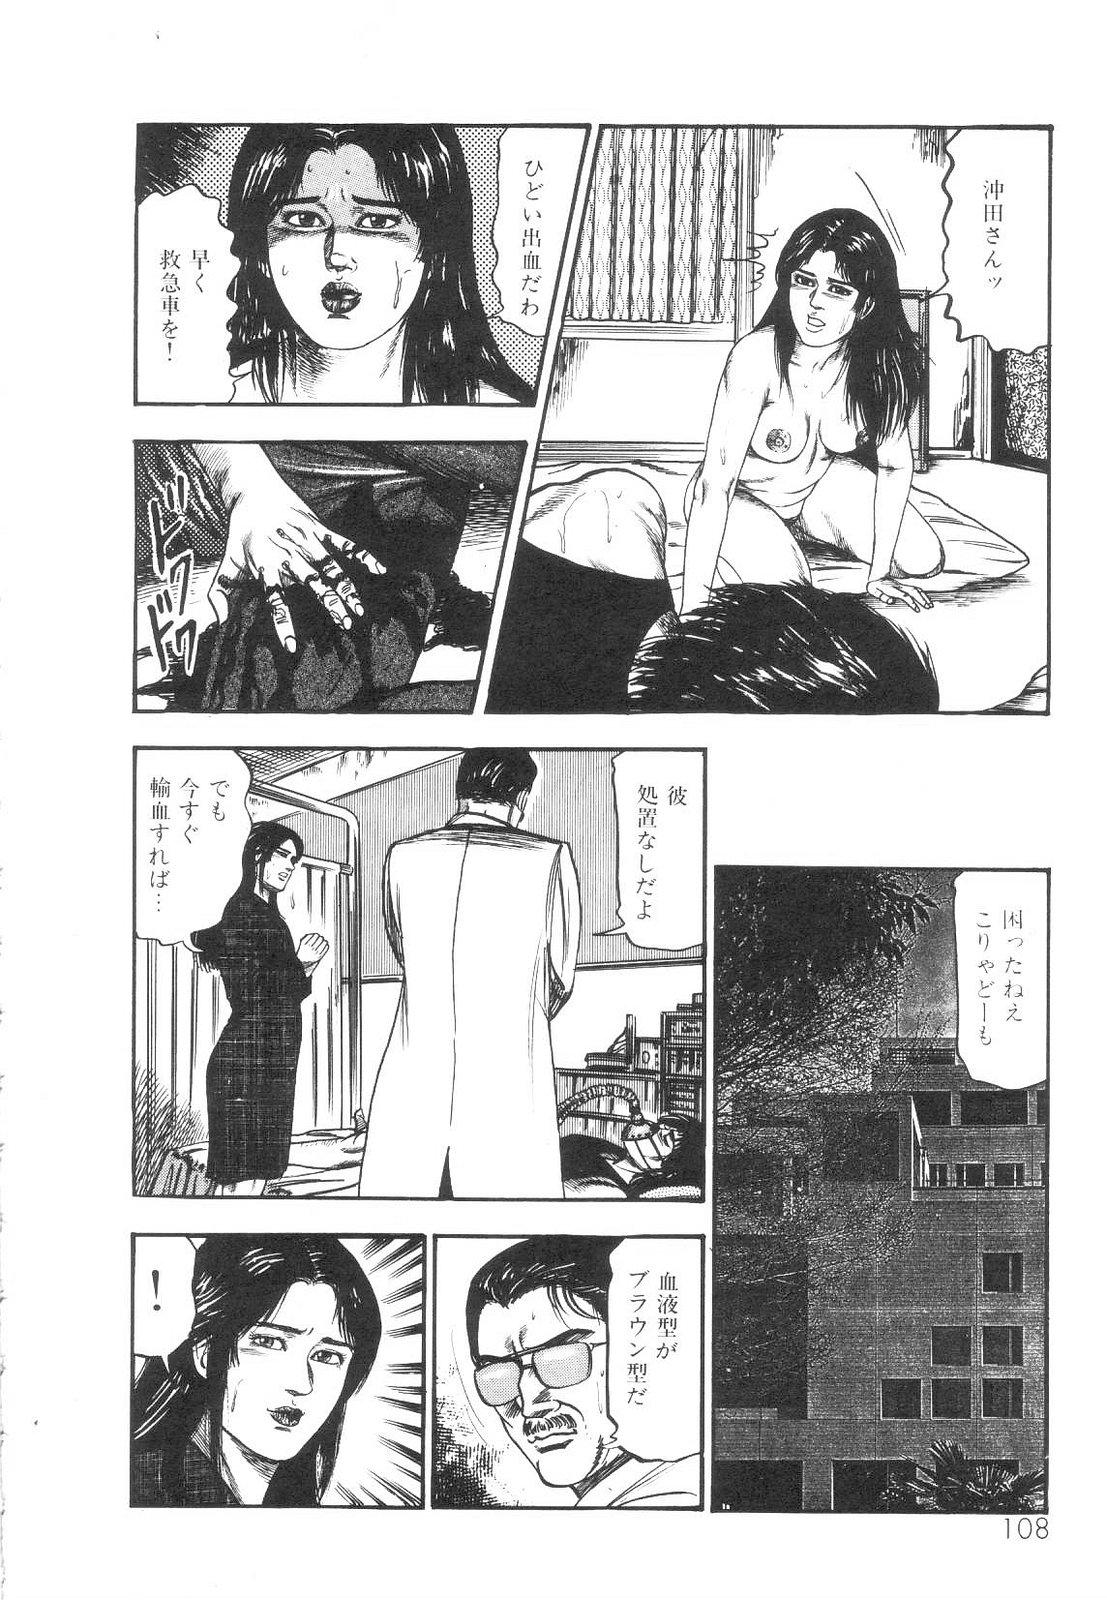 Shiro no Mokushiroku Vol. 1 - Sei Shojo Shion no Shou 108